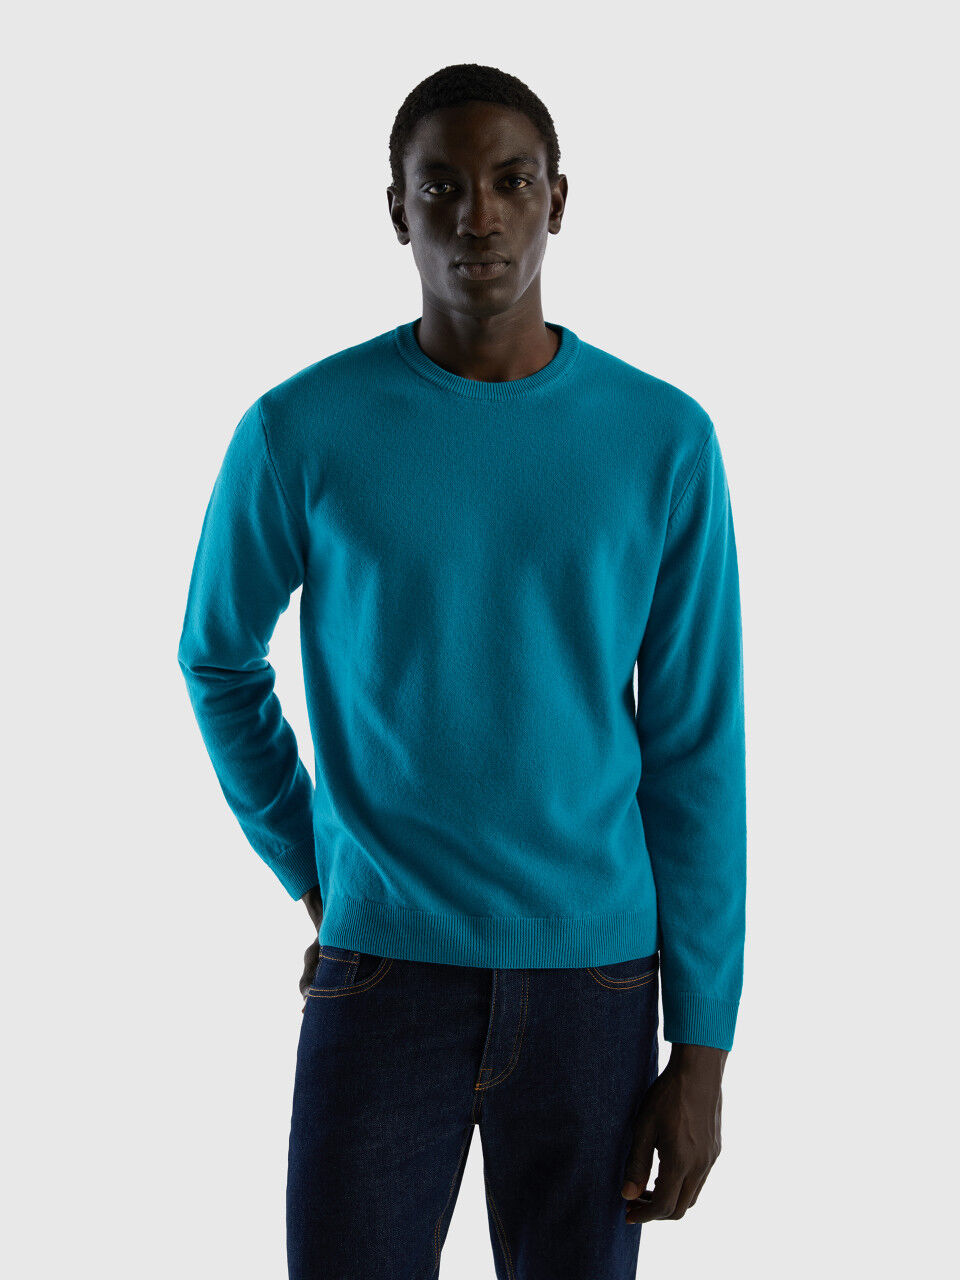 Teal crewneck sweater in pure Merino wool